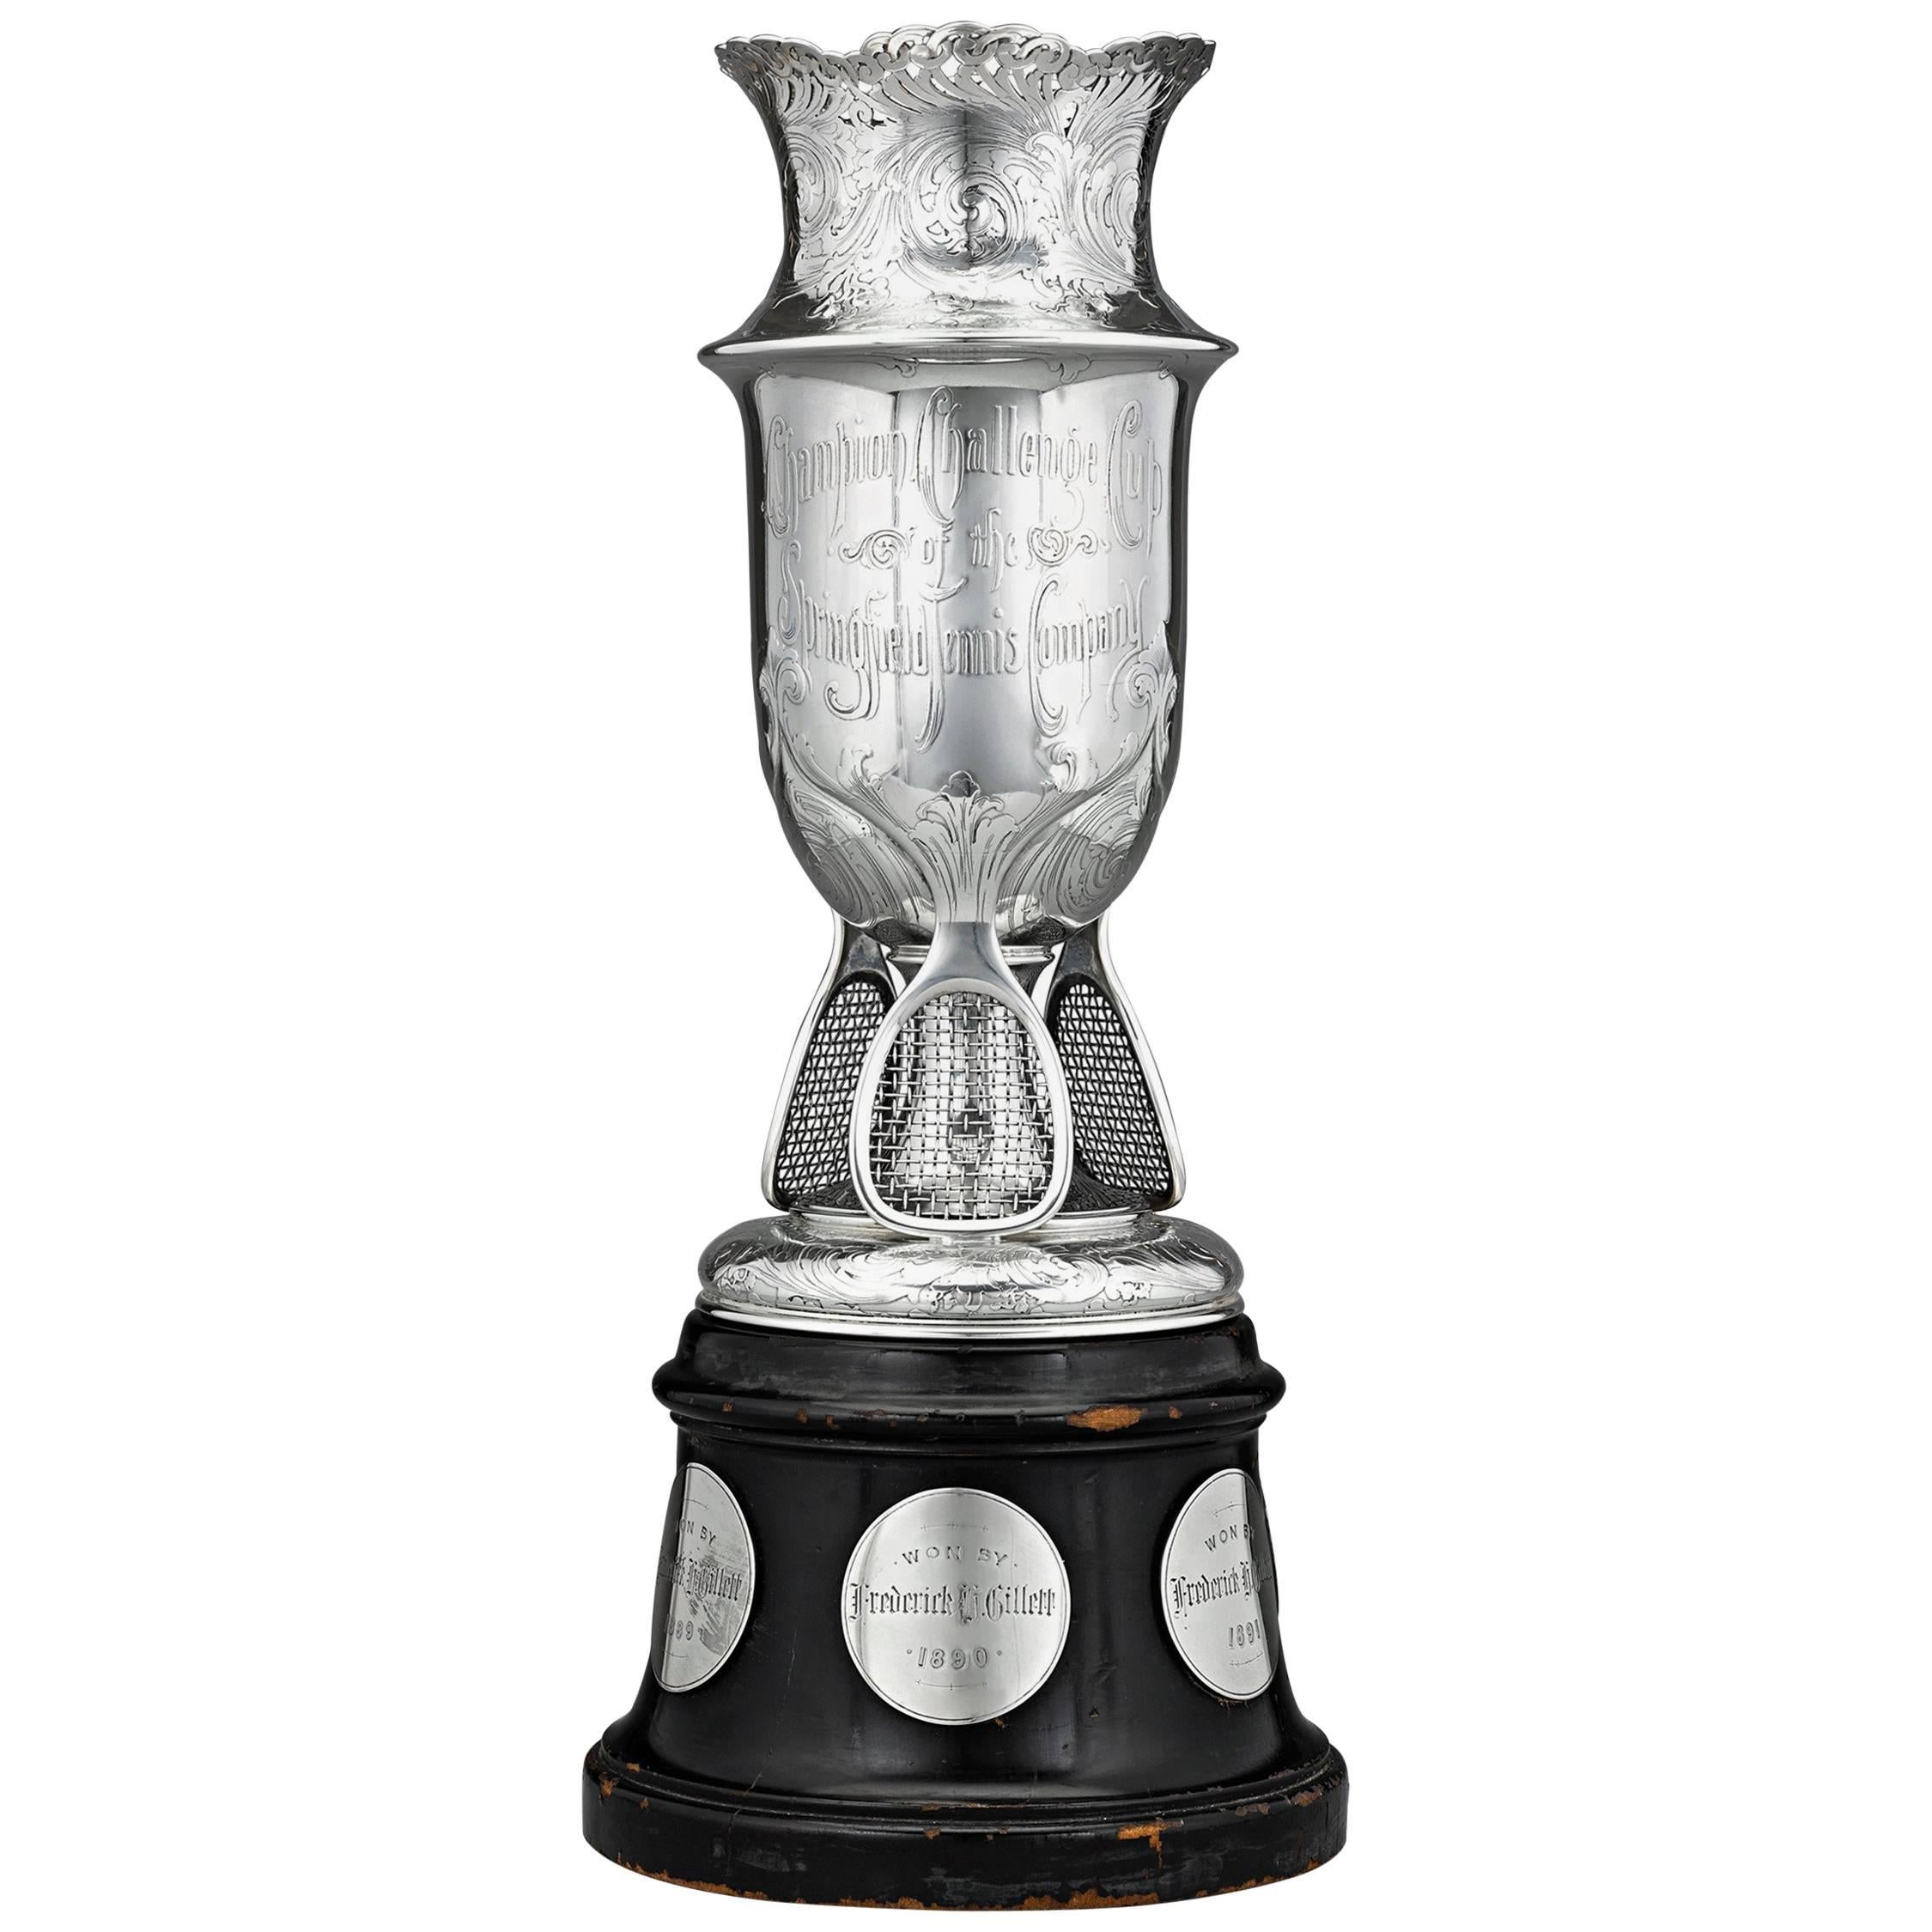 Tiffany & Co. Silver Tennis Trophy